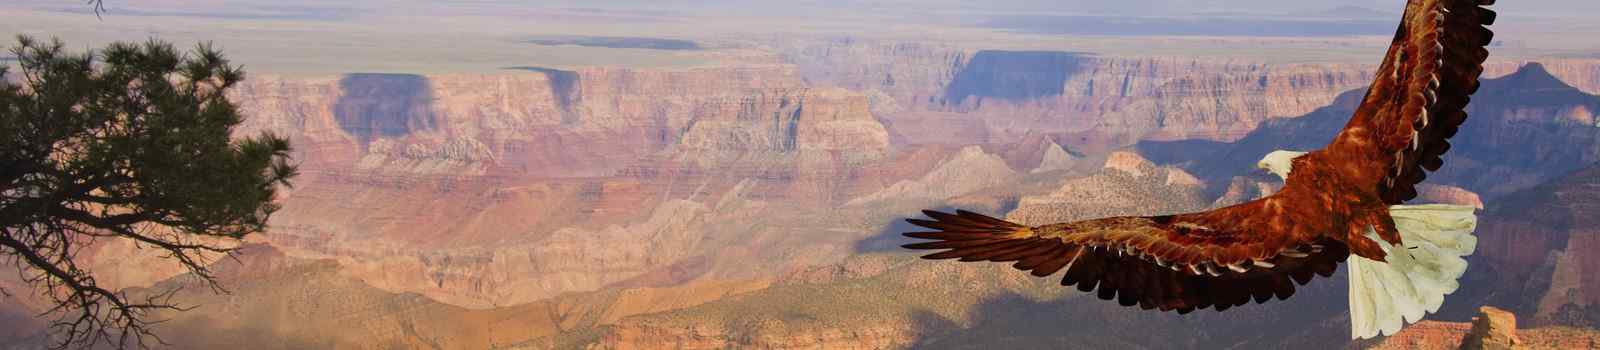 KL-USA-WESTERN-USA -USA Grand Canyon